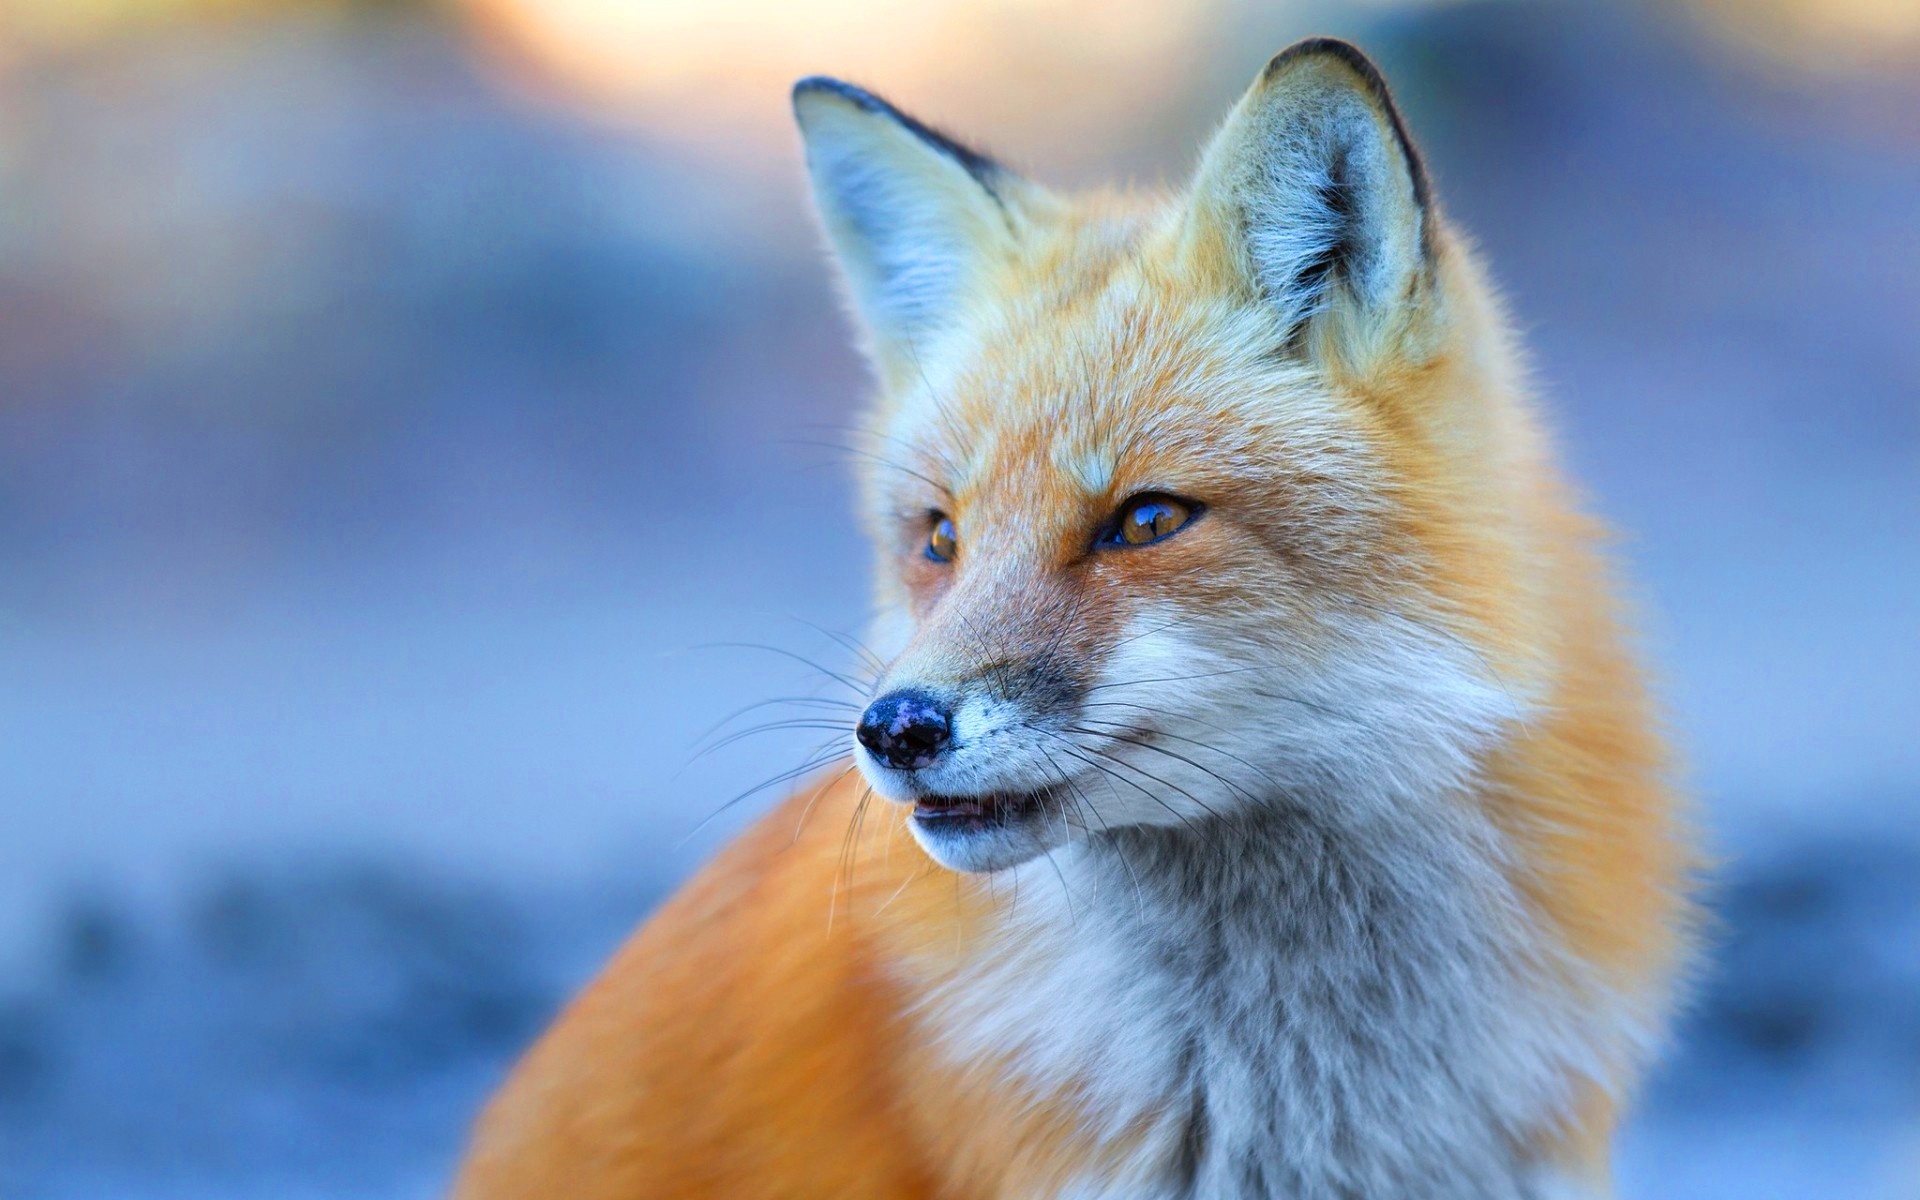 Cute Fox - Red Fox 3 4 View - HD Wallpaper 